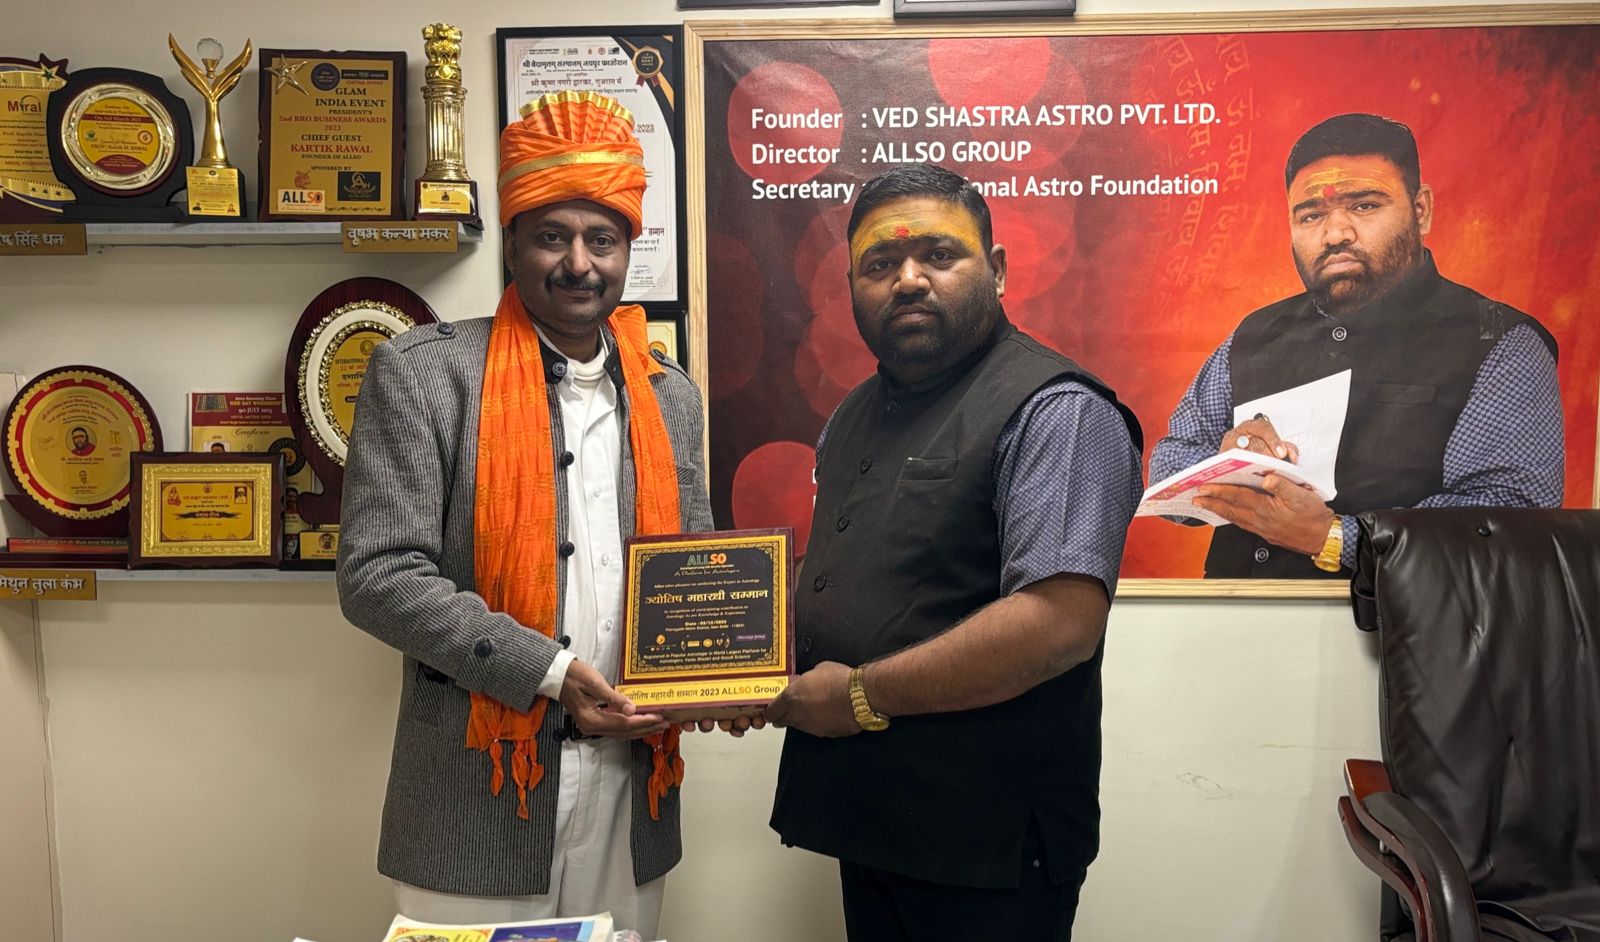 गुजरात के सुप्रसिद्ध लाल किताब के एक्सपर्ट श्री डॉक्टर अजय कुमार शुक्ला  जी को ज्योतिष महारथी अवार्ड एवं  ट्रॉफी देकर सम्मानित किया